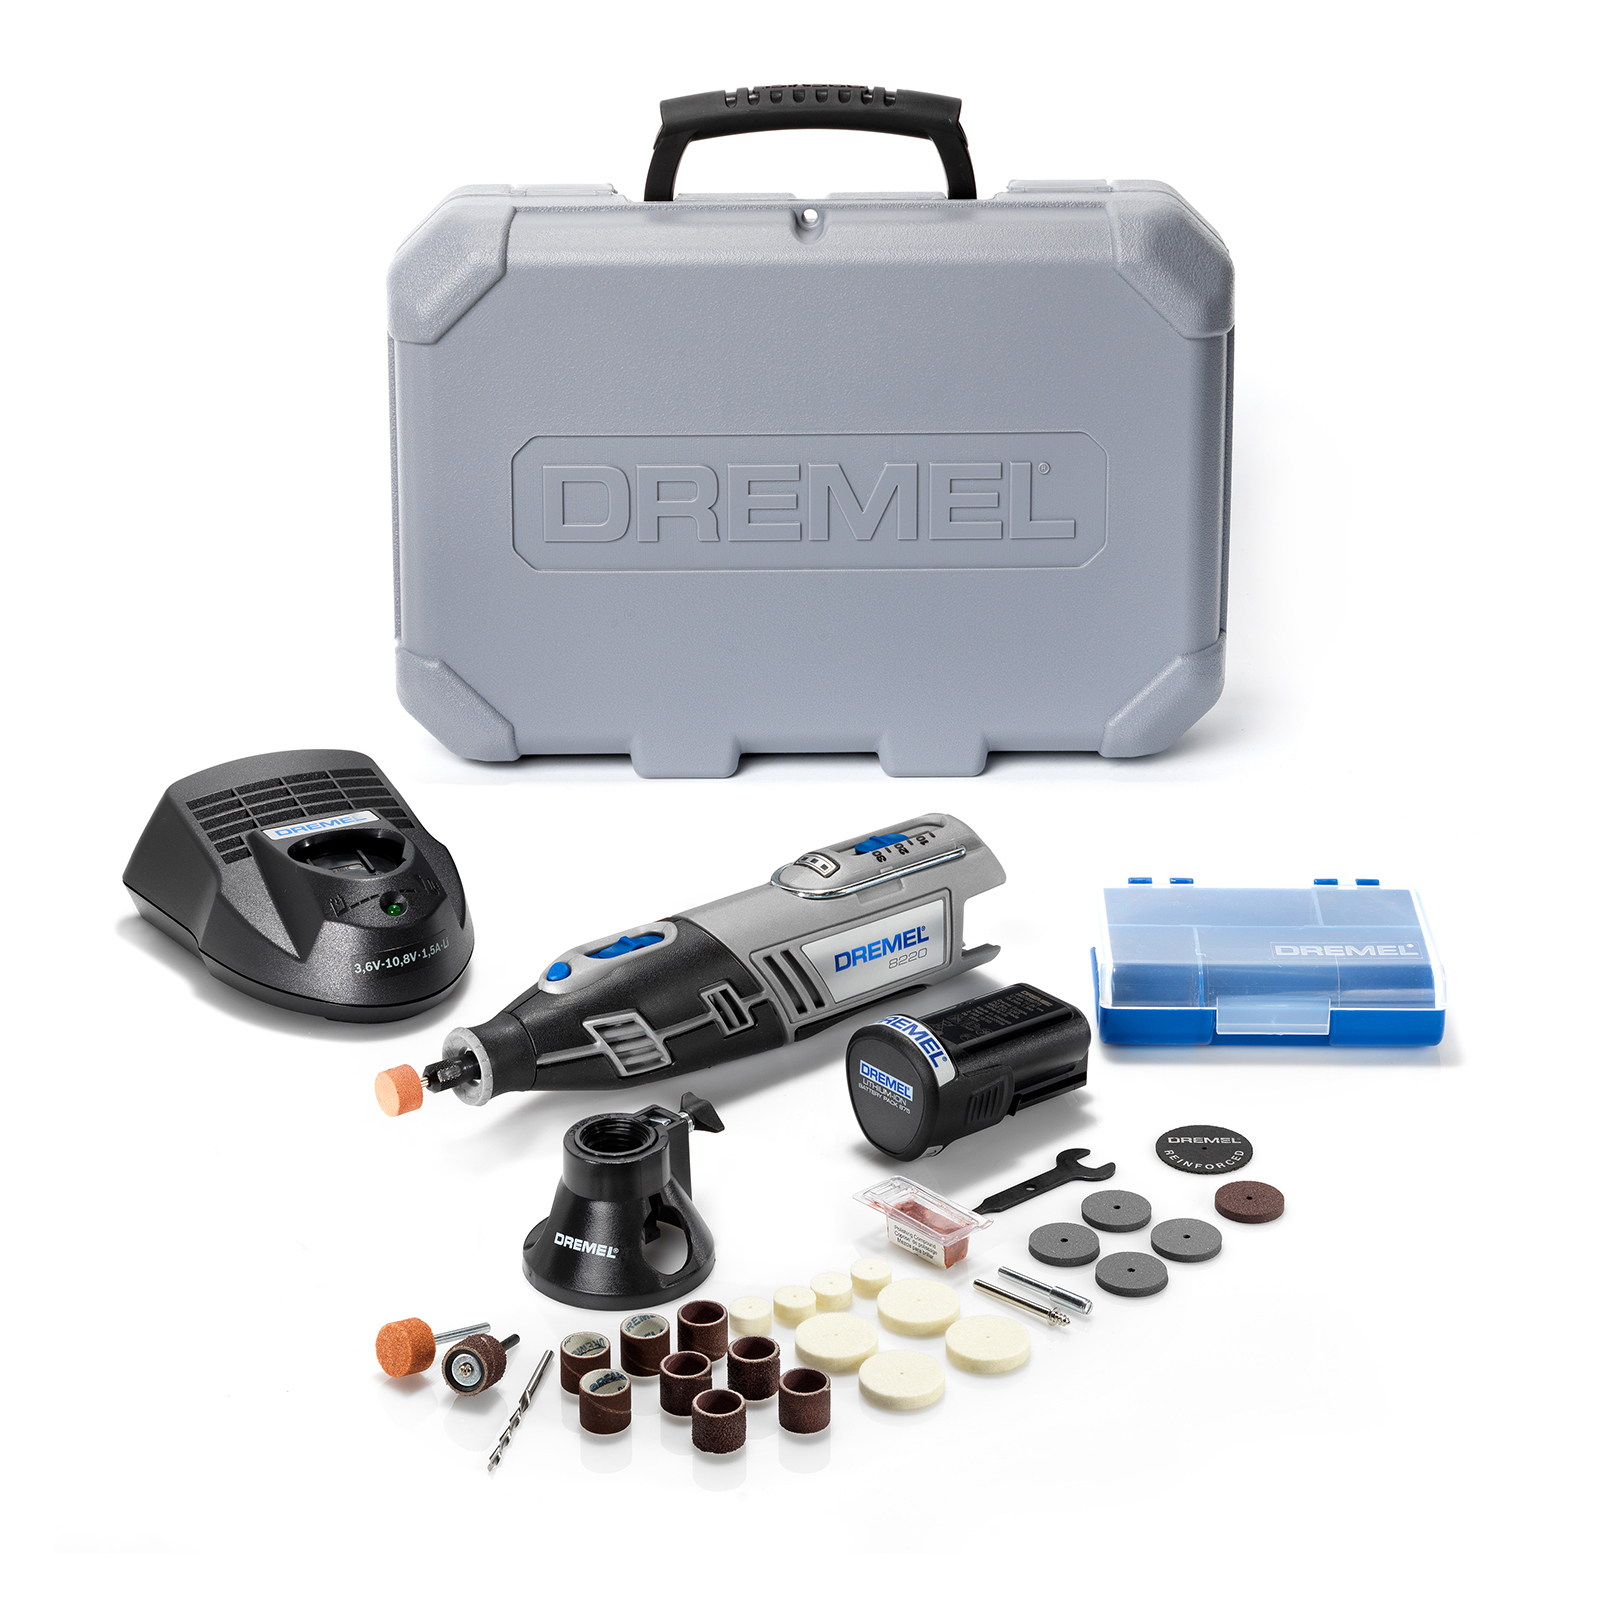 Dremel 8220 Motor Replacement - iFixit Repair Guide